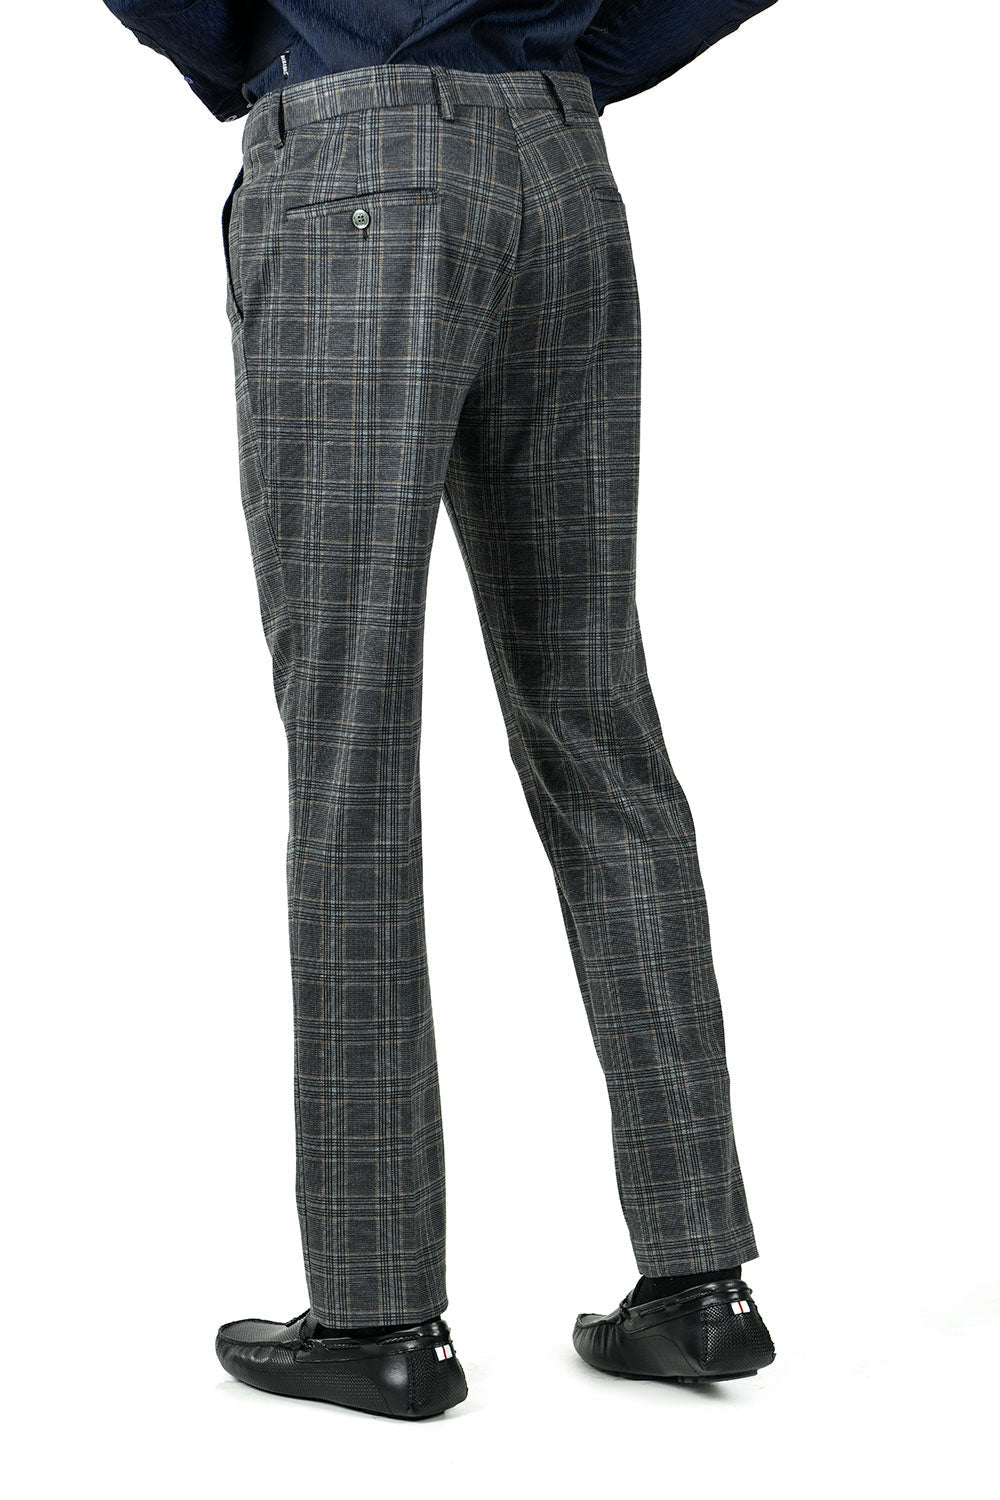 BARABAS men's checkered plaid Grey and Brown chino pants CP79